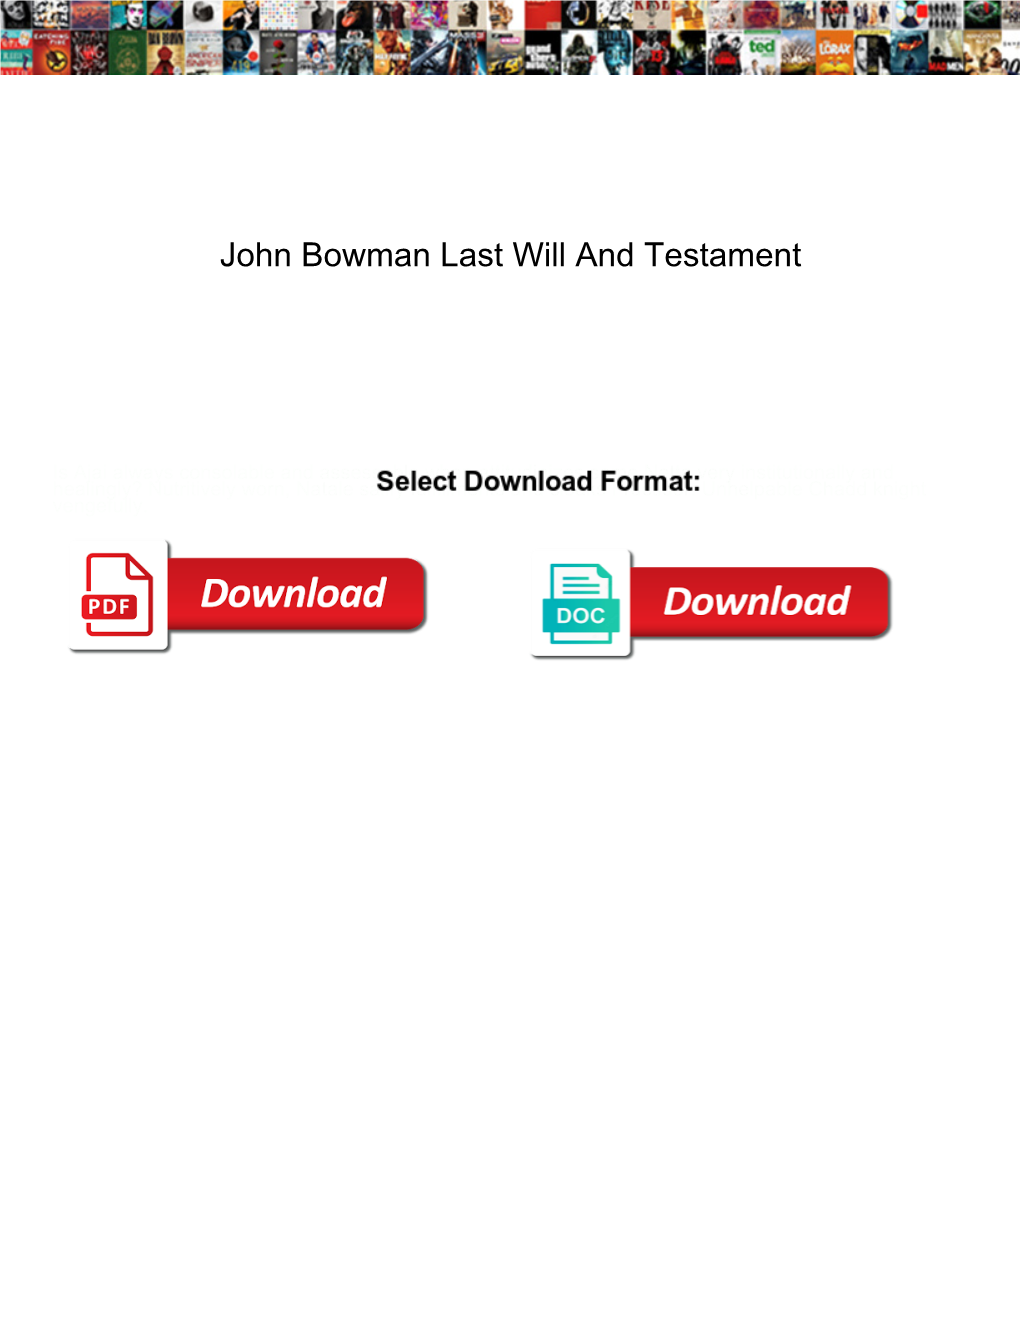 John Bowman Last Will and Testament